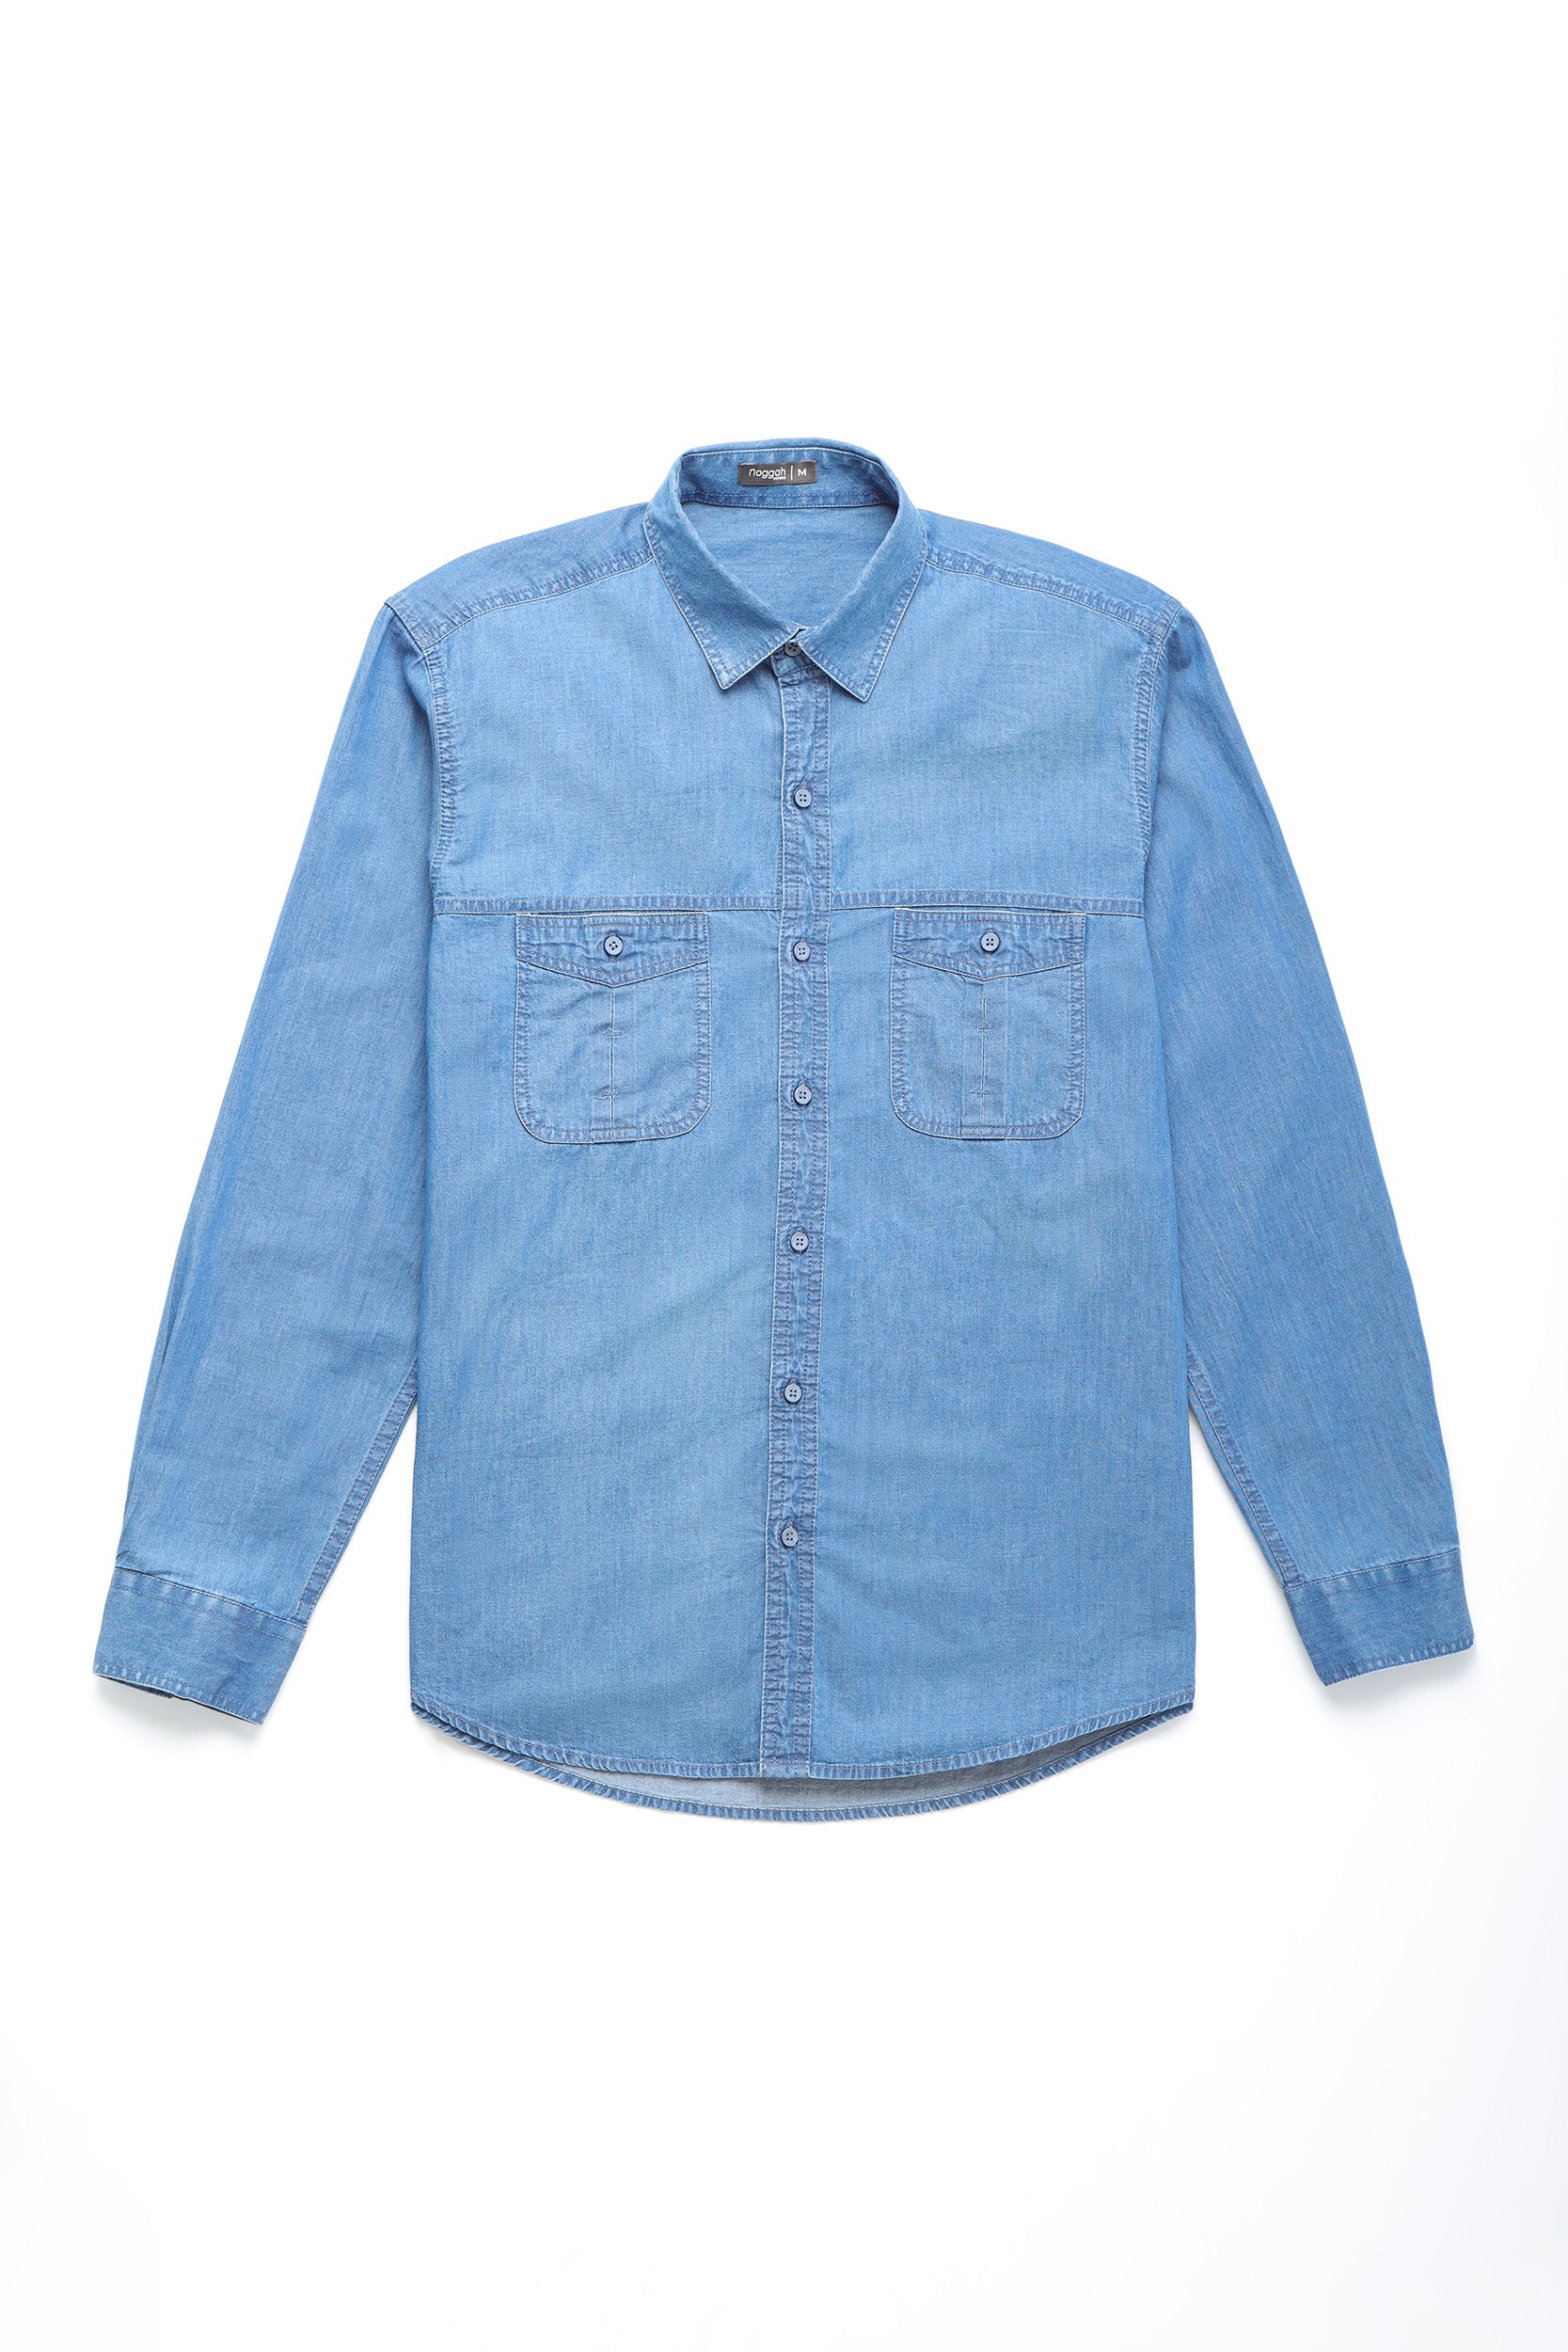 Wrangler Men's Blue Denim Retro Long Sleeve Western Shirt